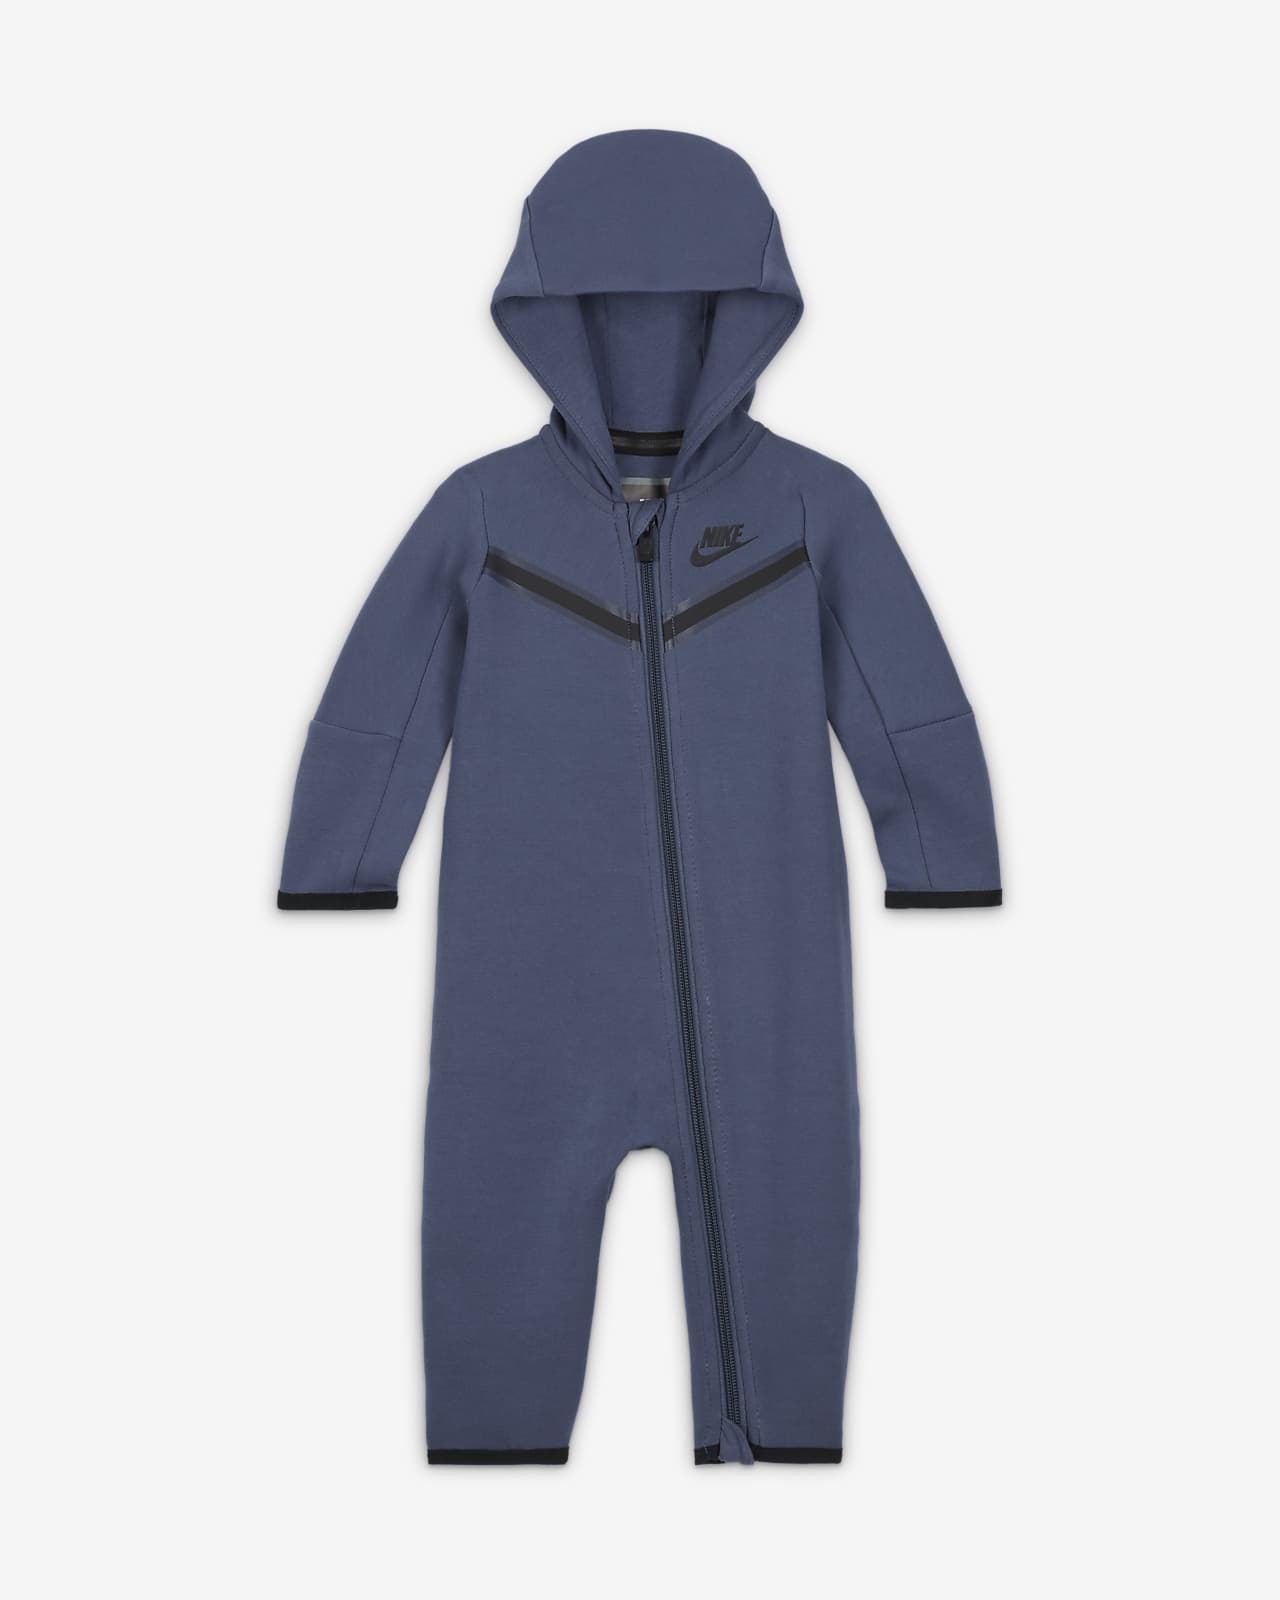 Continent kwaadaardig intelligentie Nike Sportswear Tech Fleece Baby (0-9M) Full-Zip Coverall. Nike.com